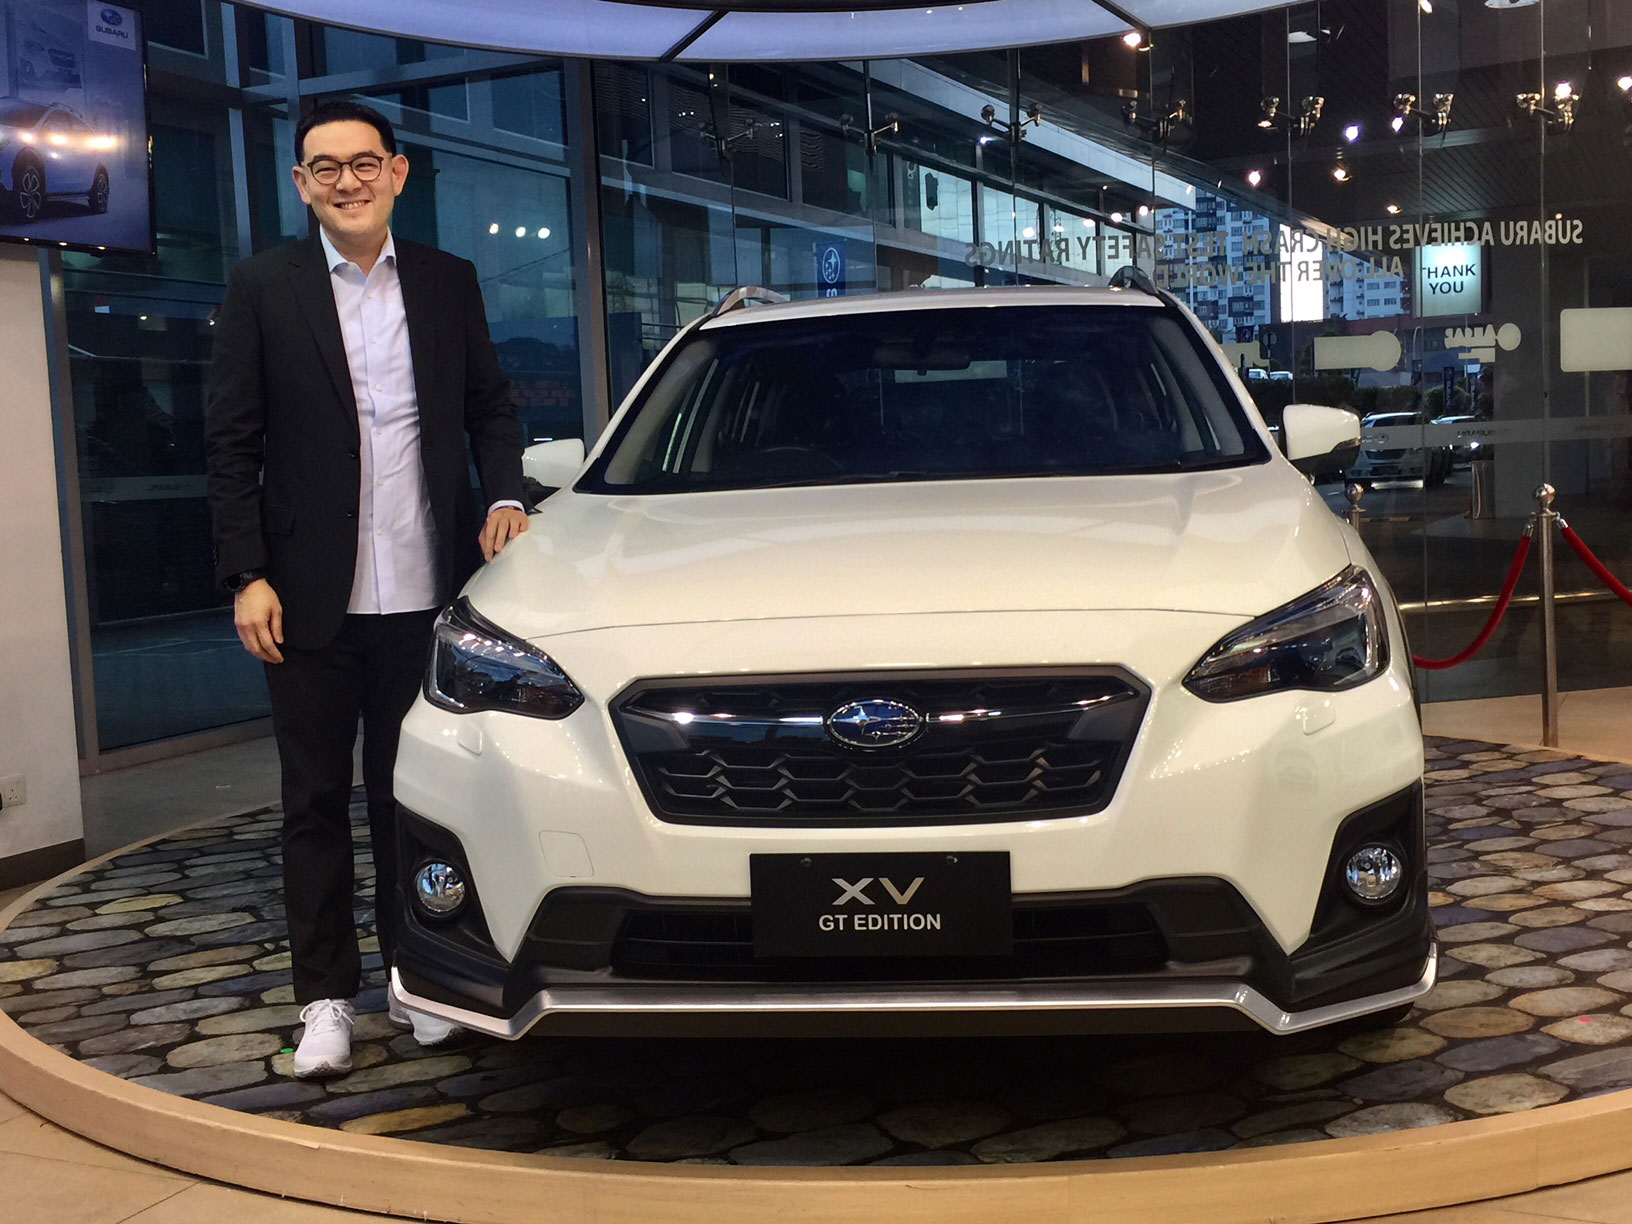 陈唱国际有限公司副主席兼董事经理陈骏鸿为Subaru XV GT Edition主持推介。